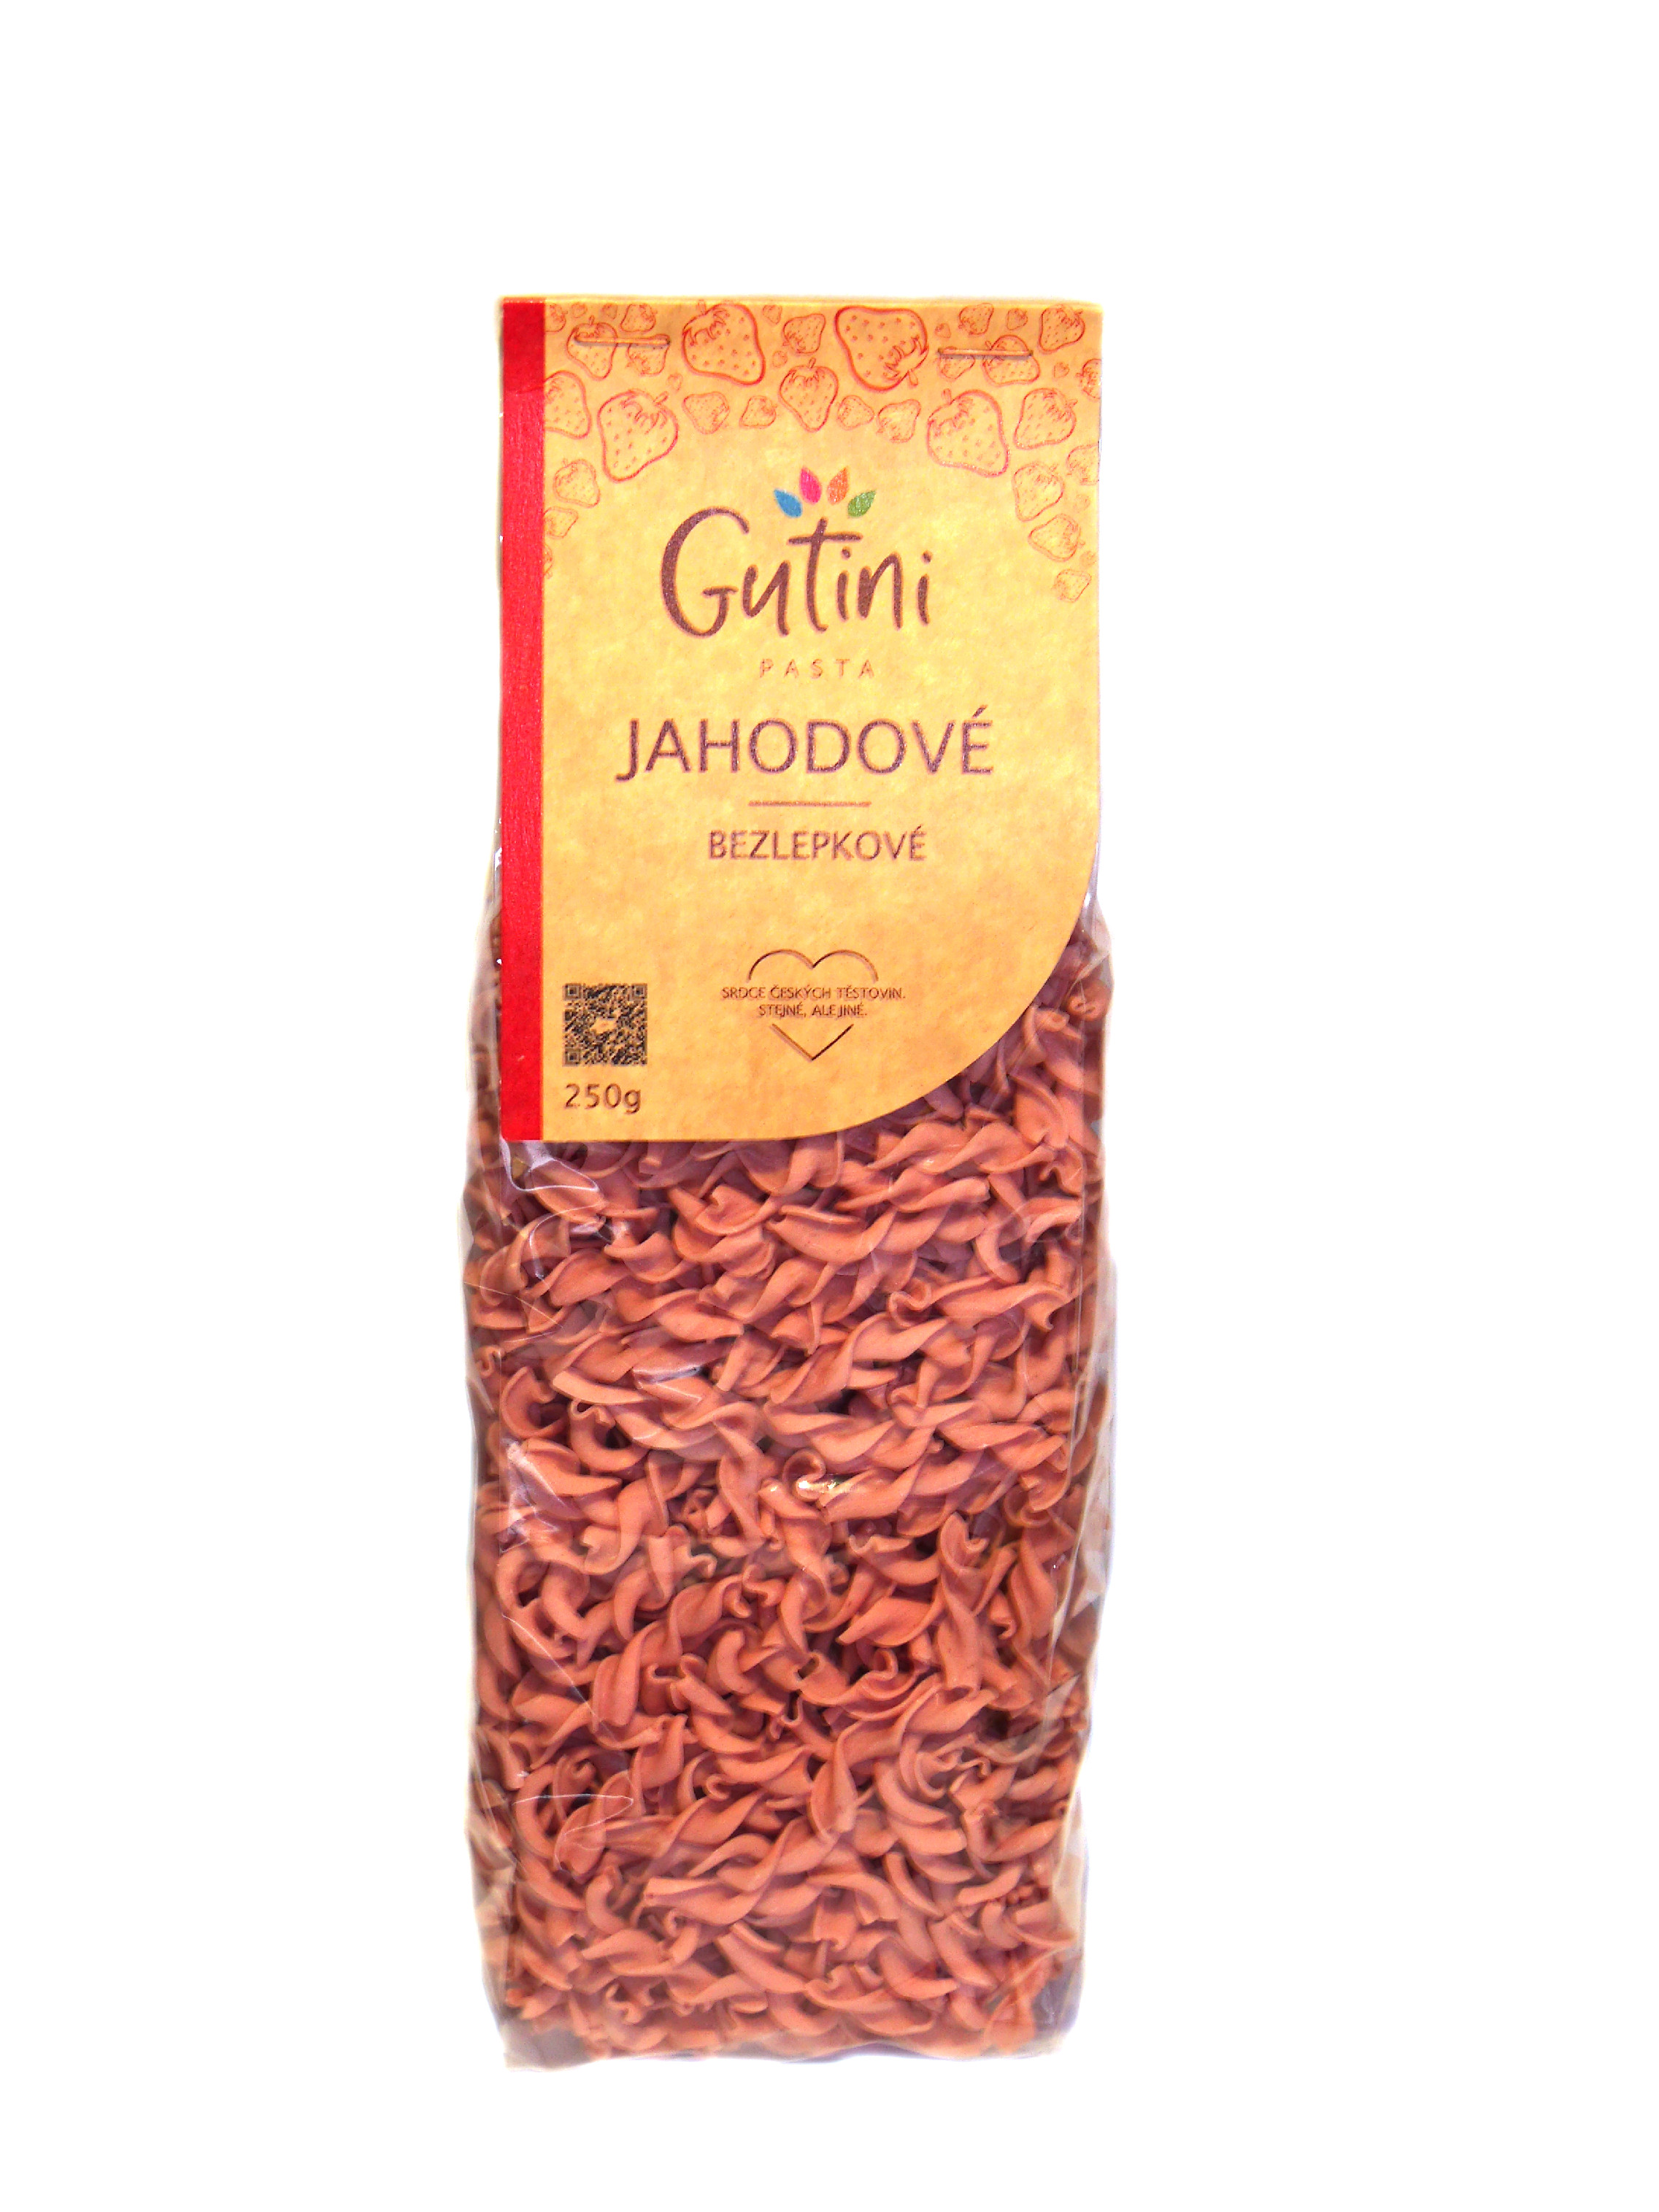 E-shop Gutini - Jahodové těstoviny bezlepkové, bez kukuřičné mouky, 250 g